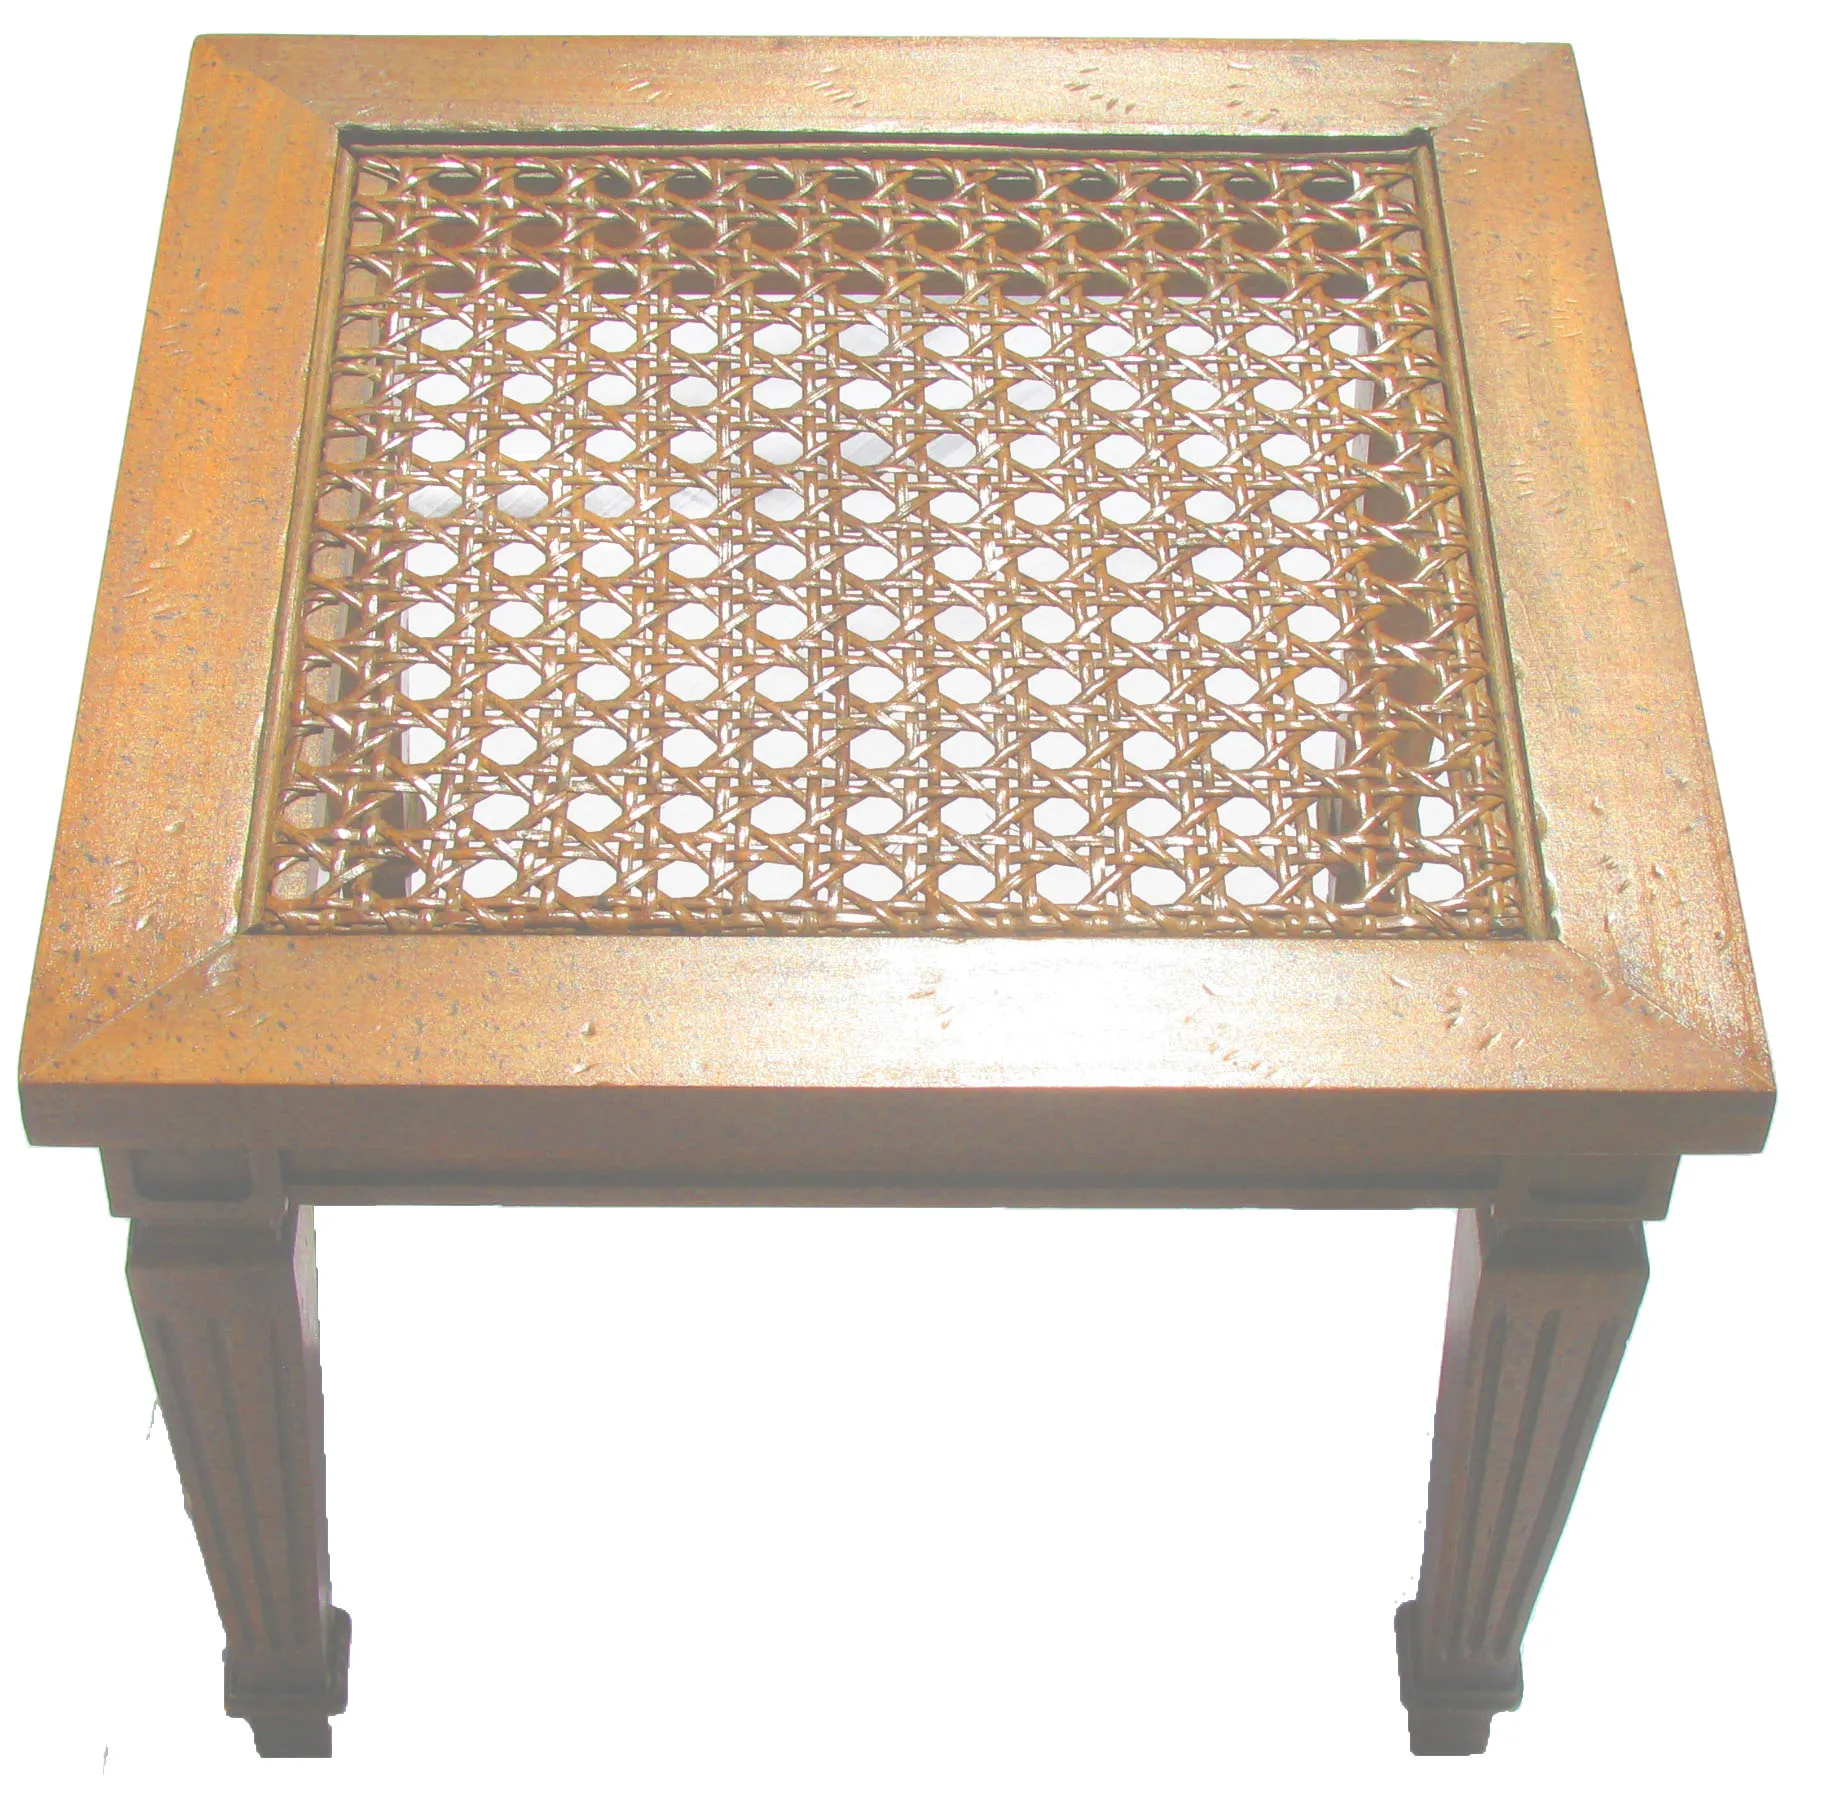 Regency Style Wood & Cane Accent Tables - Chez Vous - Brown - 18" L x 18" W x 15" H